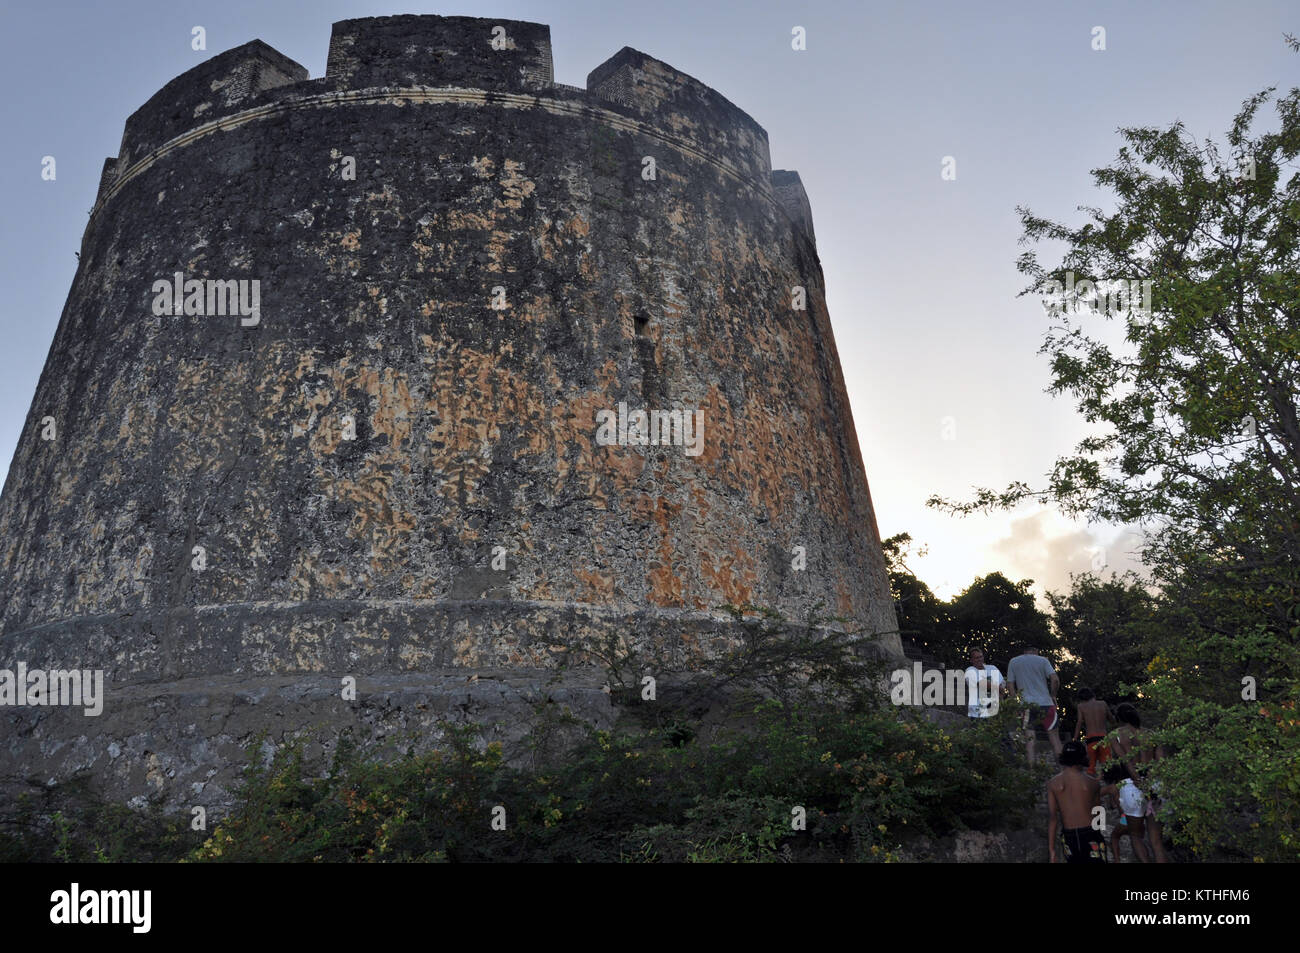 CURACAO, West Indies, Februar 23.: Eine nicht identifizierte Familie besuche Fort Beekenburg am 23 Februar, 2009, Curacao, Niederländische Antillen, West Indies. T Stockfoto